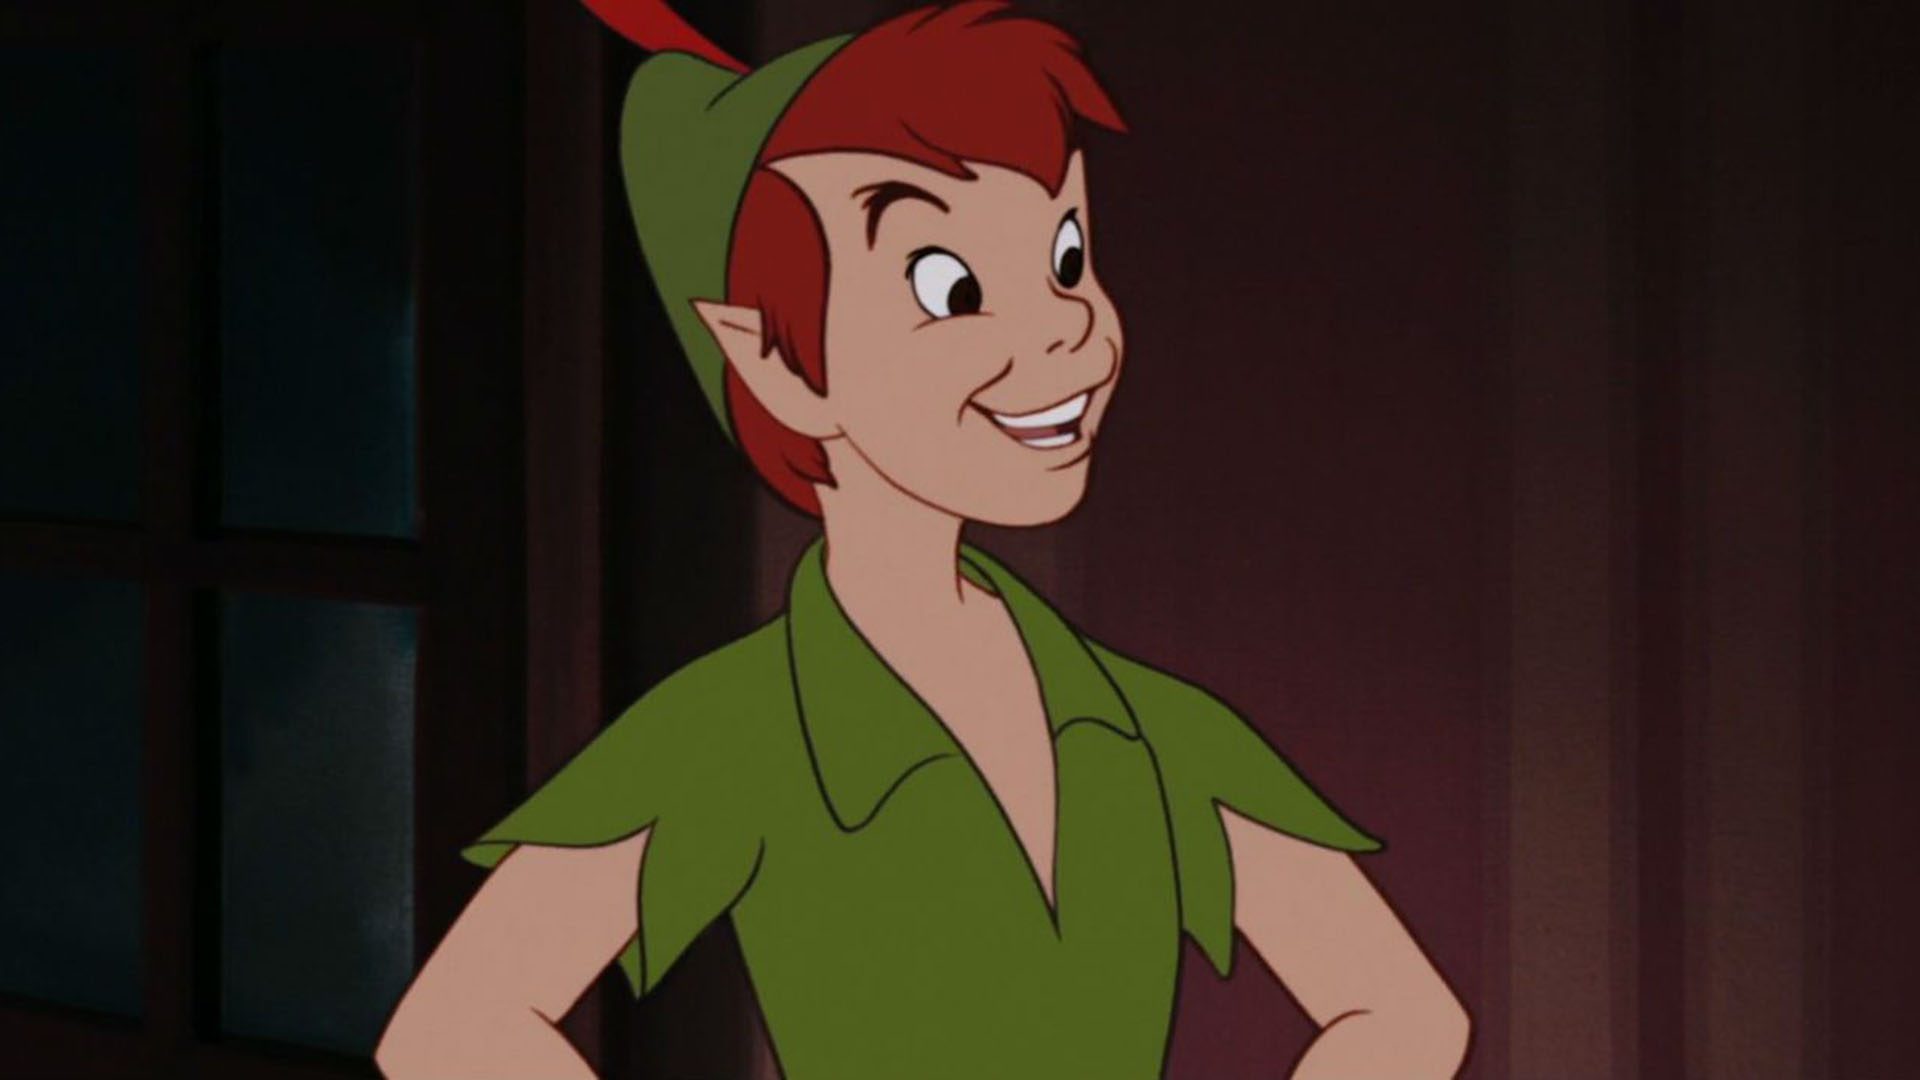 Quantas adaptações de Peter Pan existem